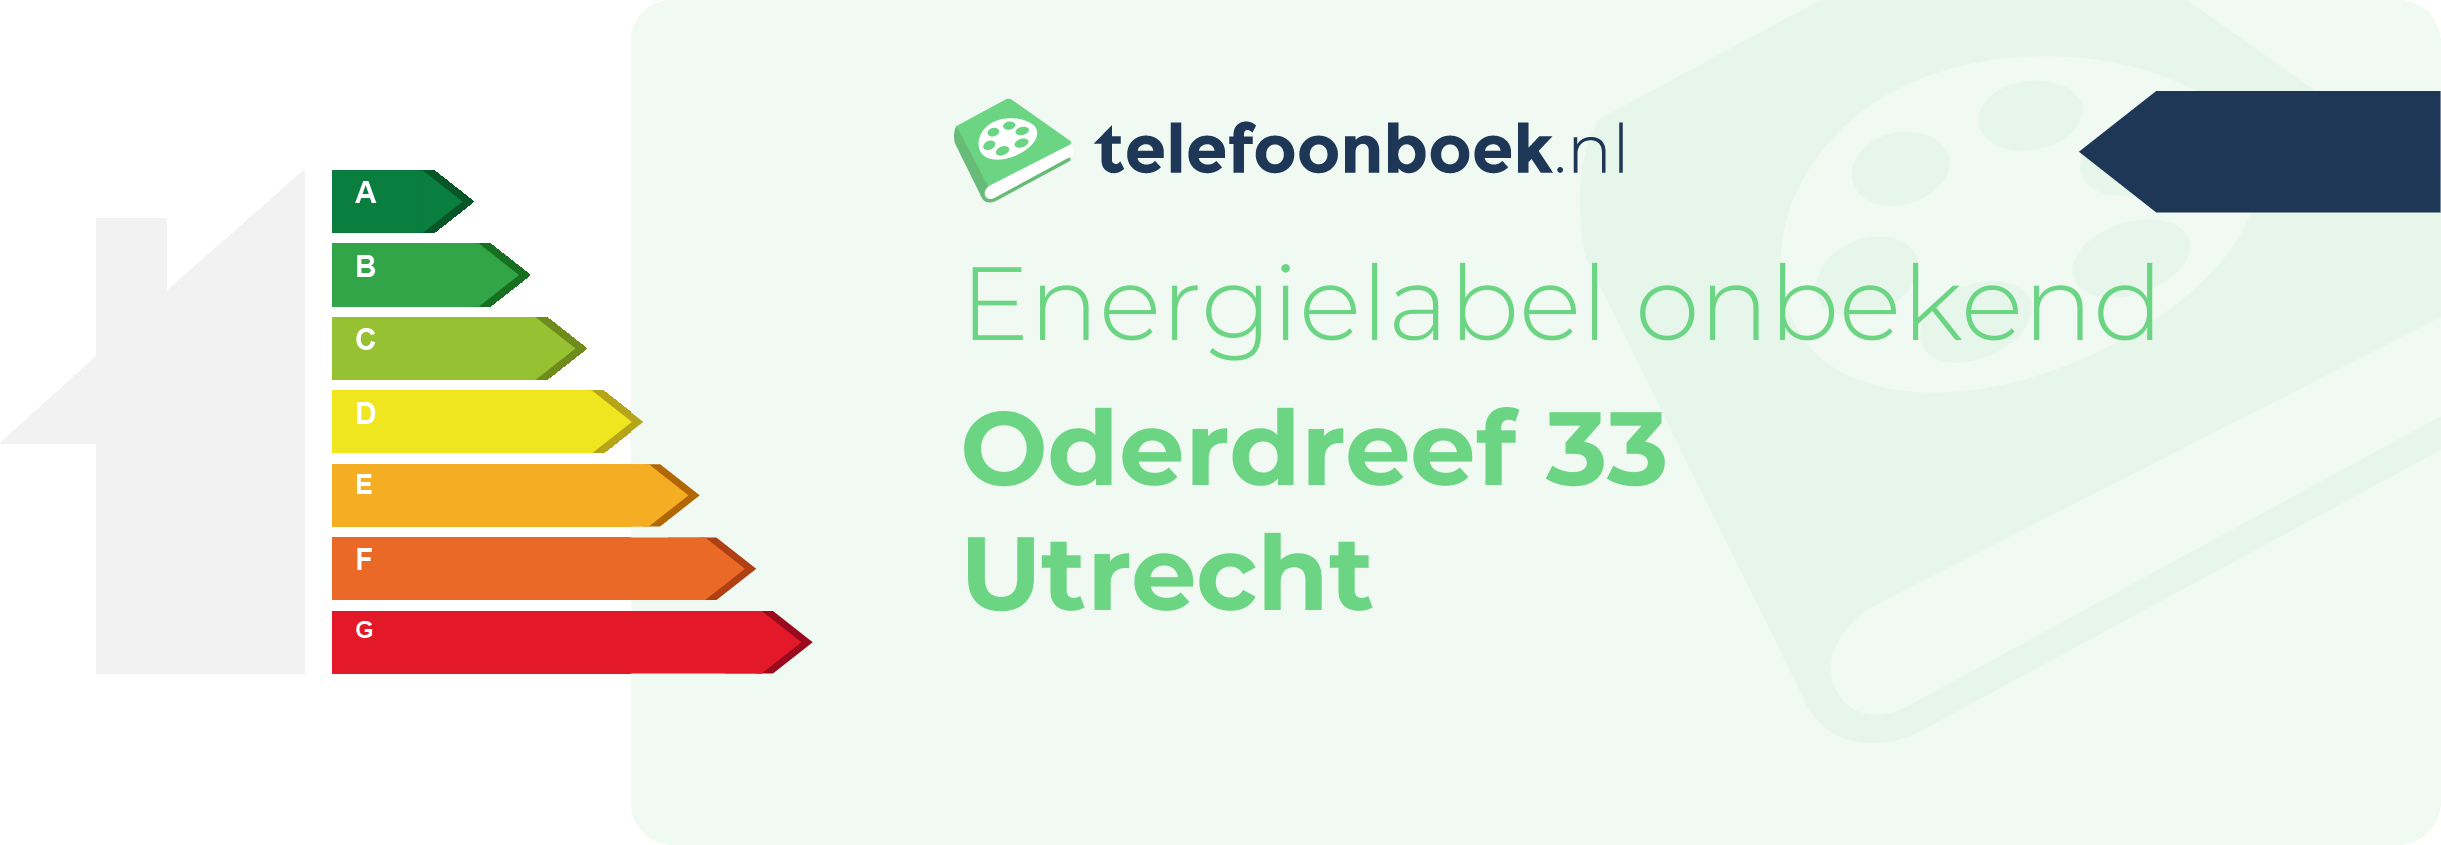 Energielabel Oderdreef 33 Utrecht